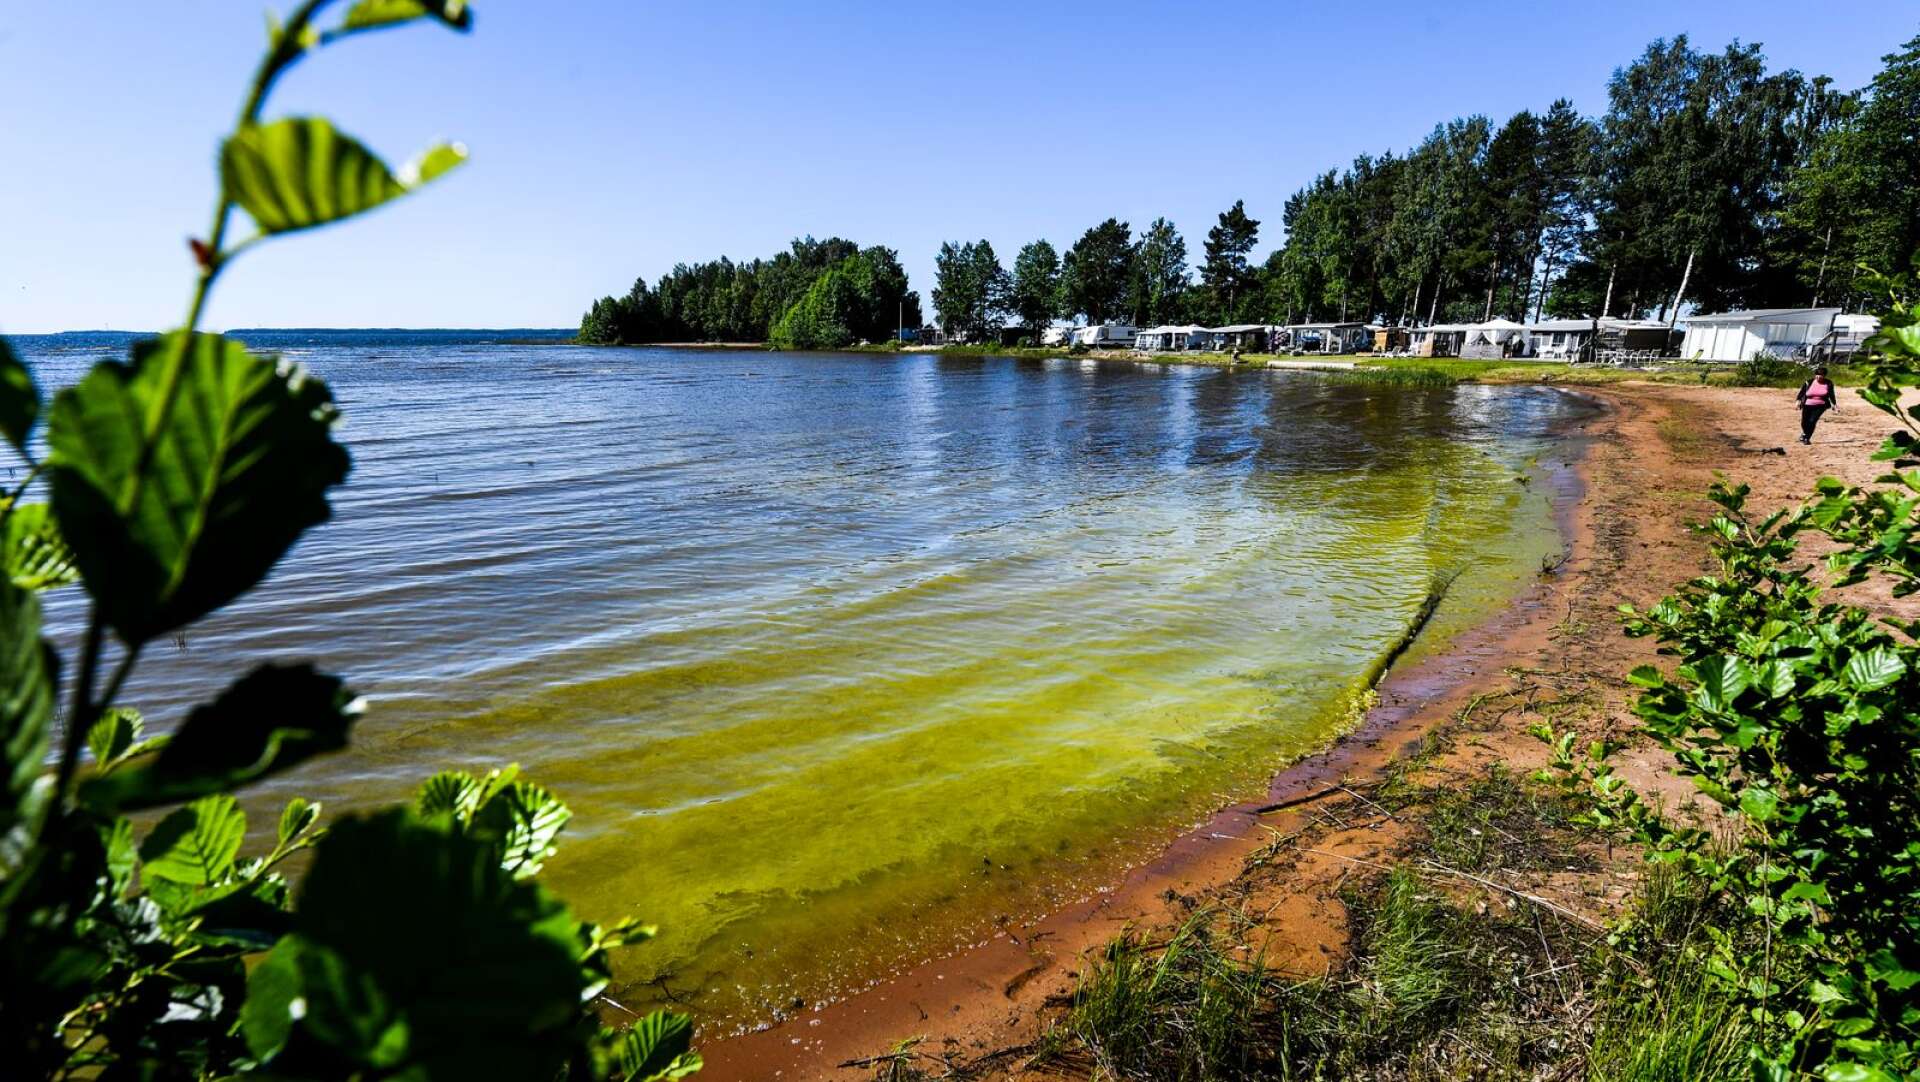 Vid Bomstadbaden är det grönt längs strandkanten, vilken kan indikera algblomning. Men David Nordentjell, vd för campingen, säger att det i stället rör sig om pollen och gräs.